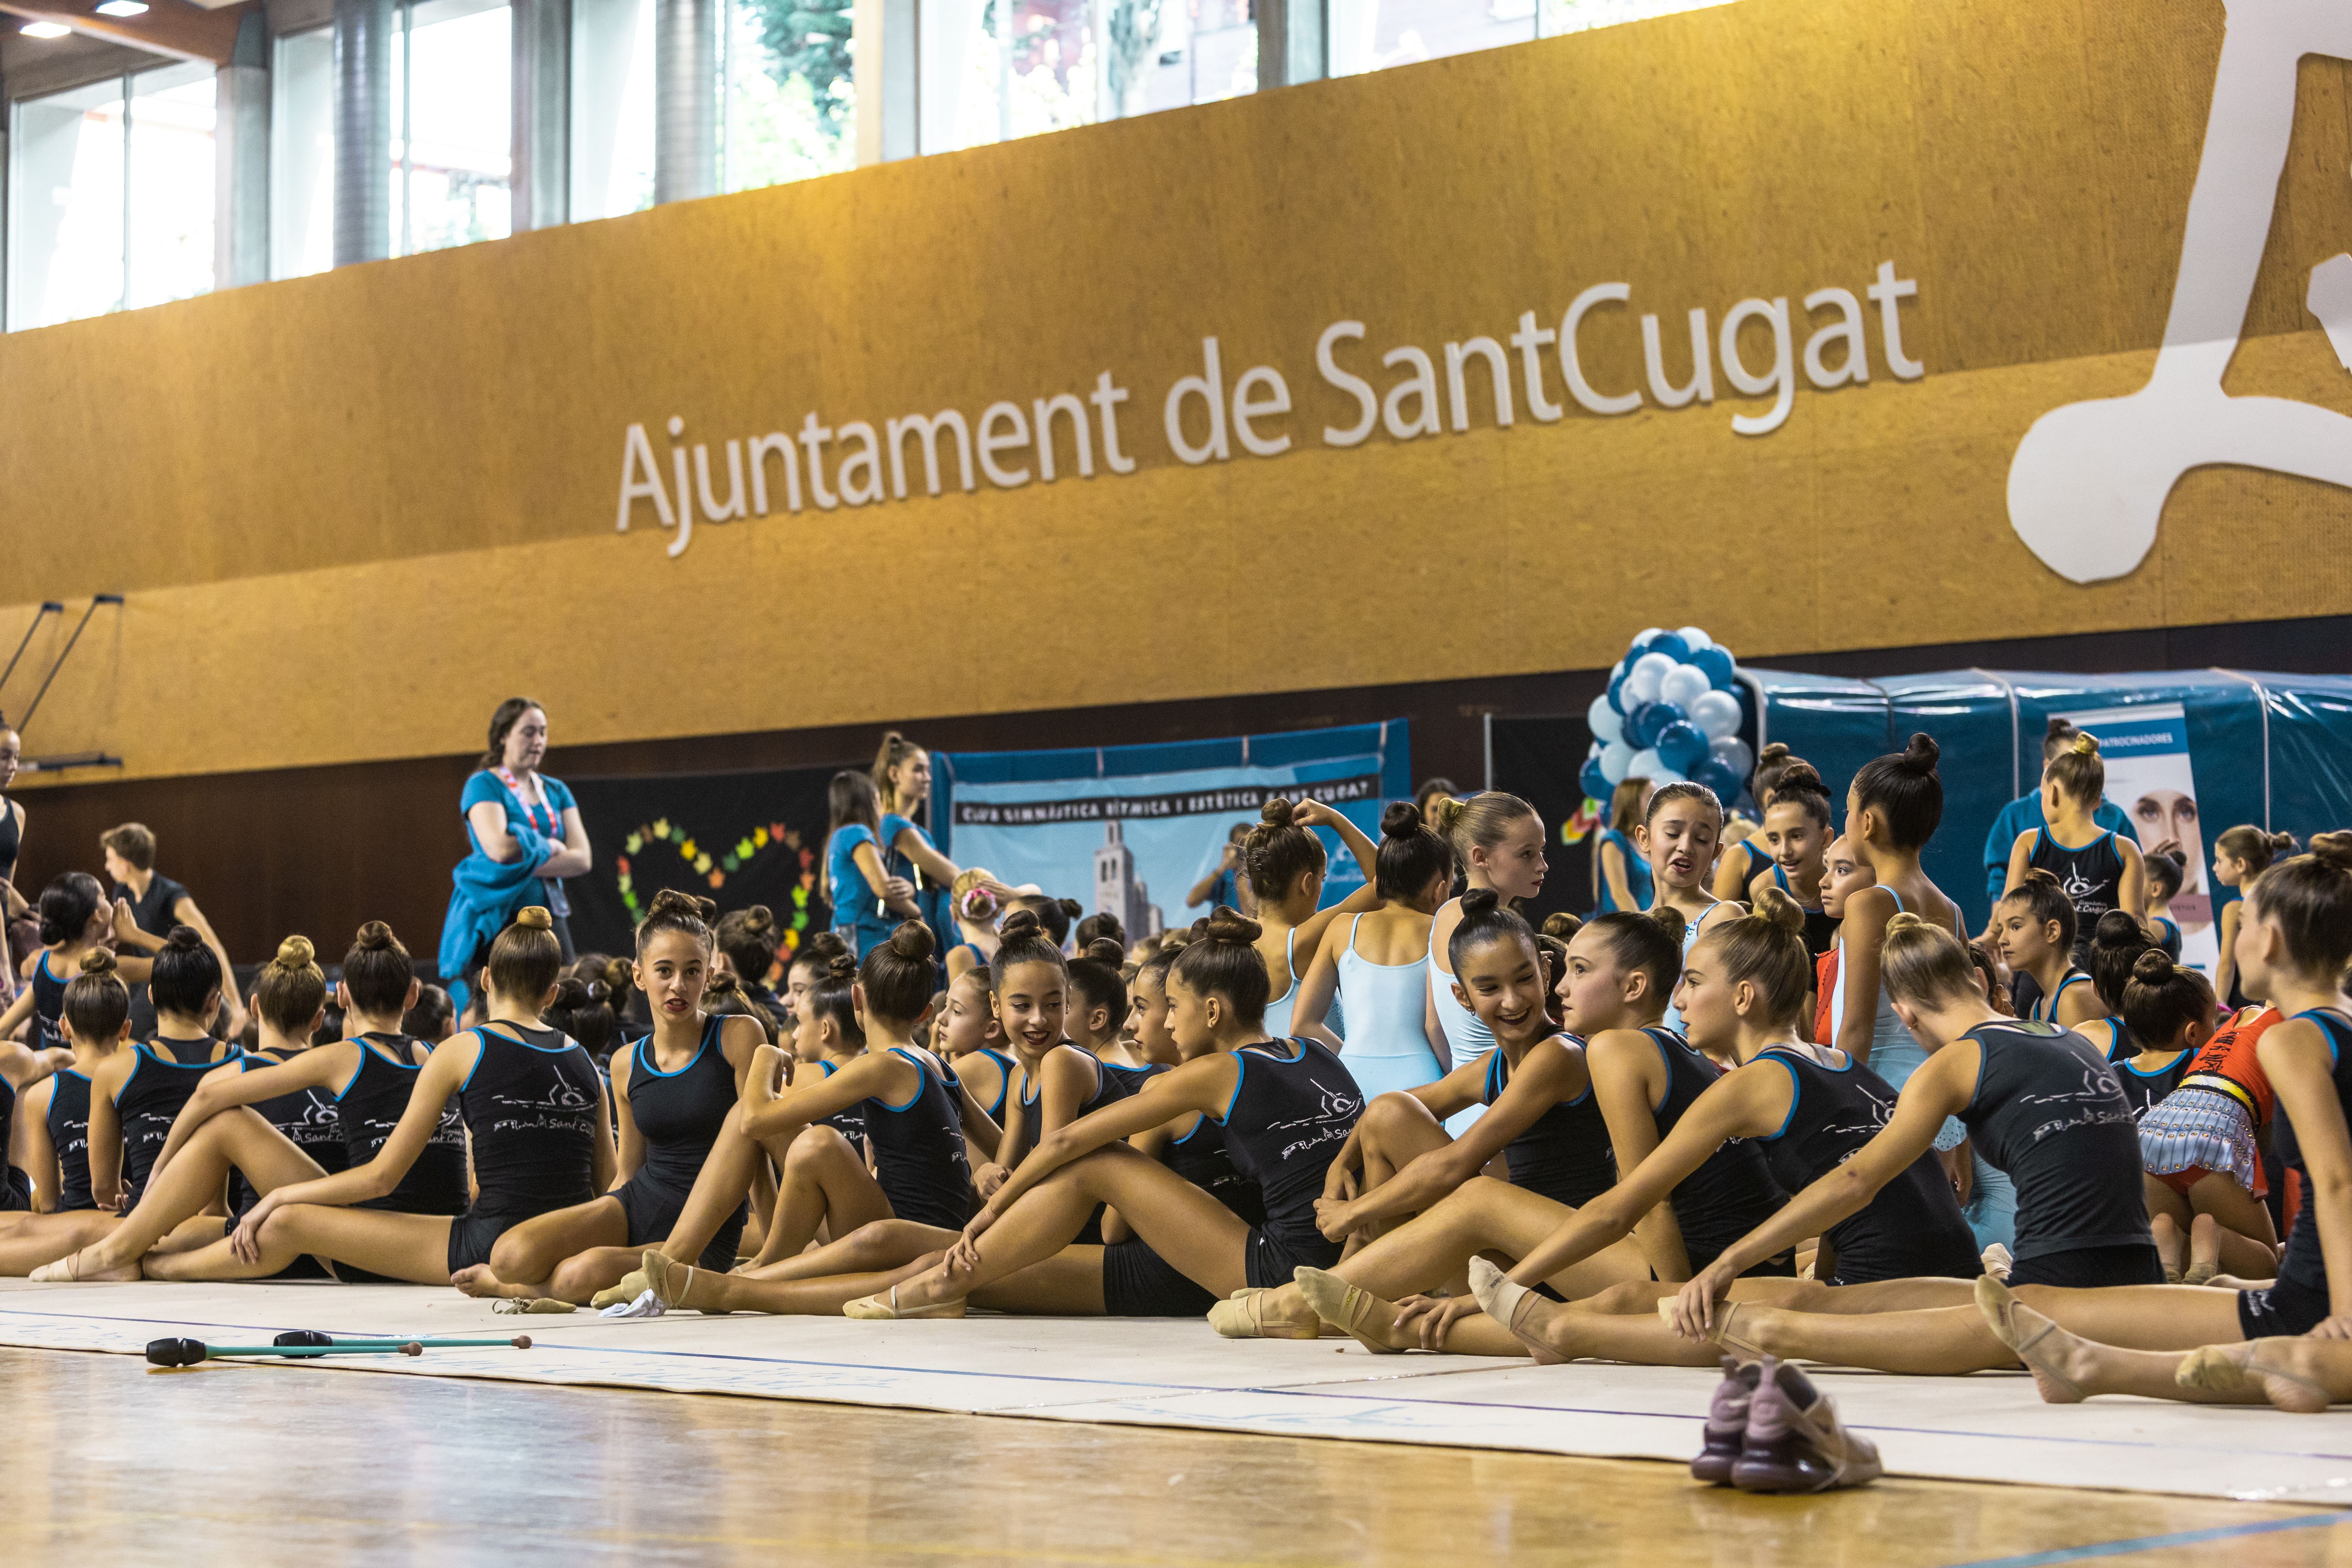 Presentació i exhibició dels equips del club i la selecció espnayola de gimnàstica. FOTO: Arnau Padilla